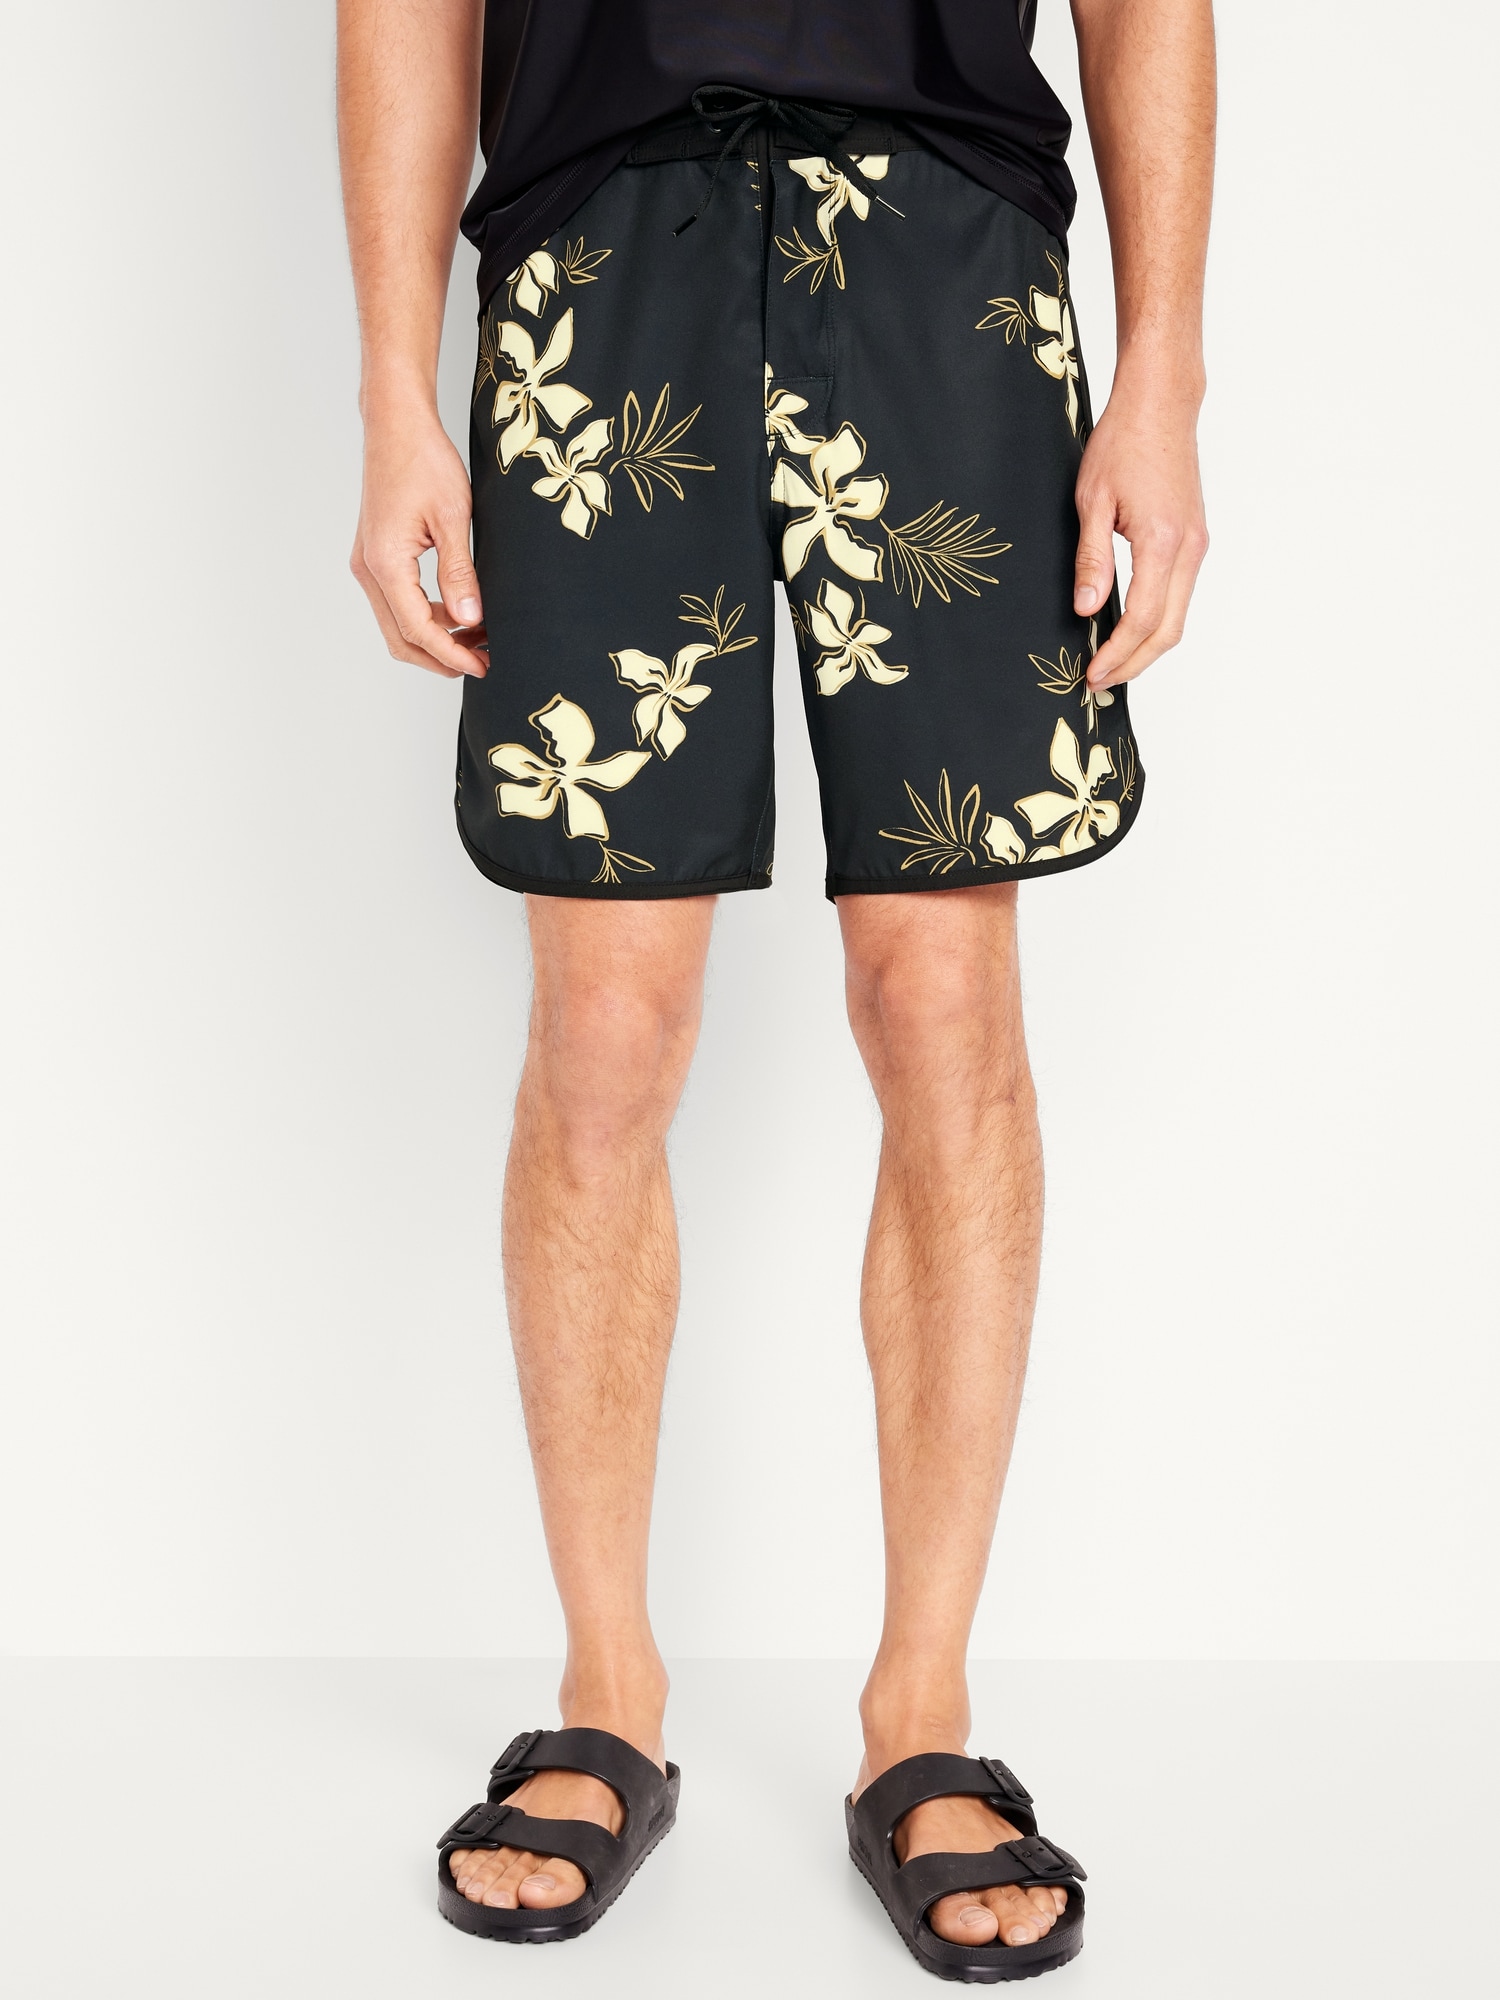 Novelty Board Shorts -- 8-inch inseam